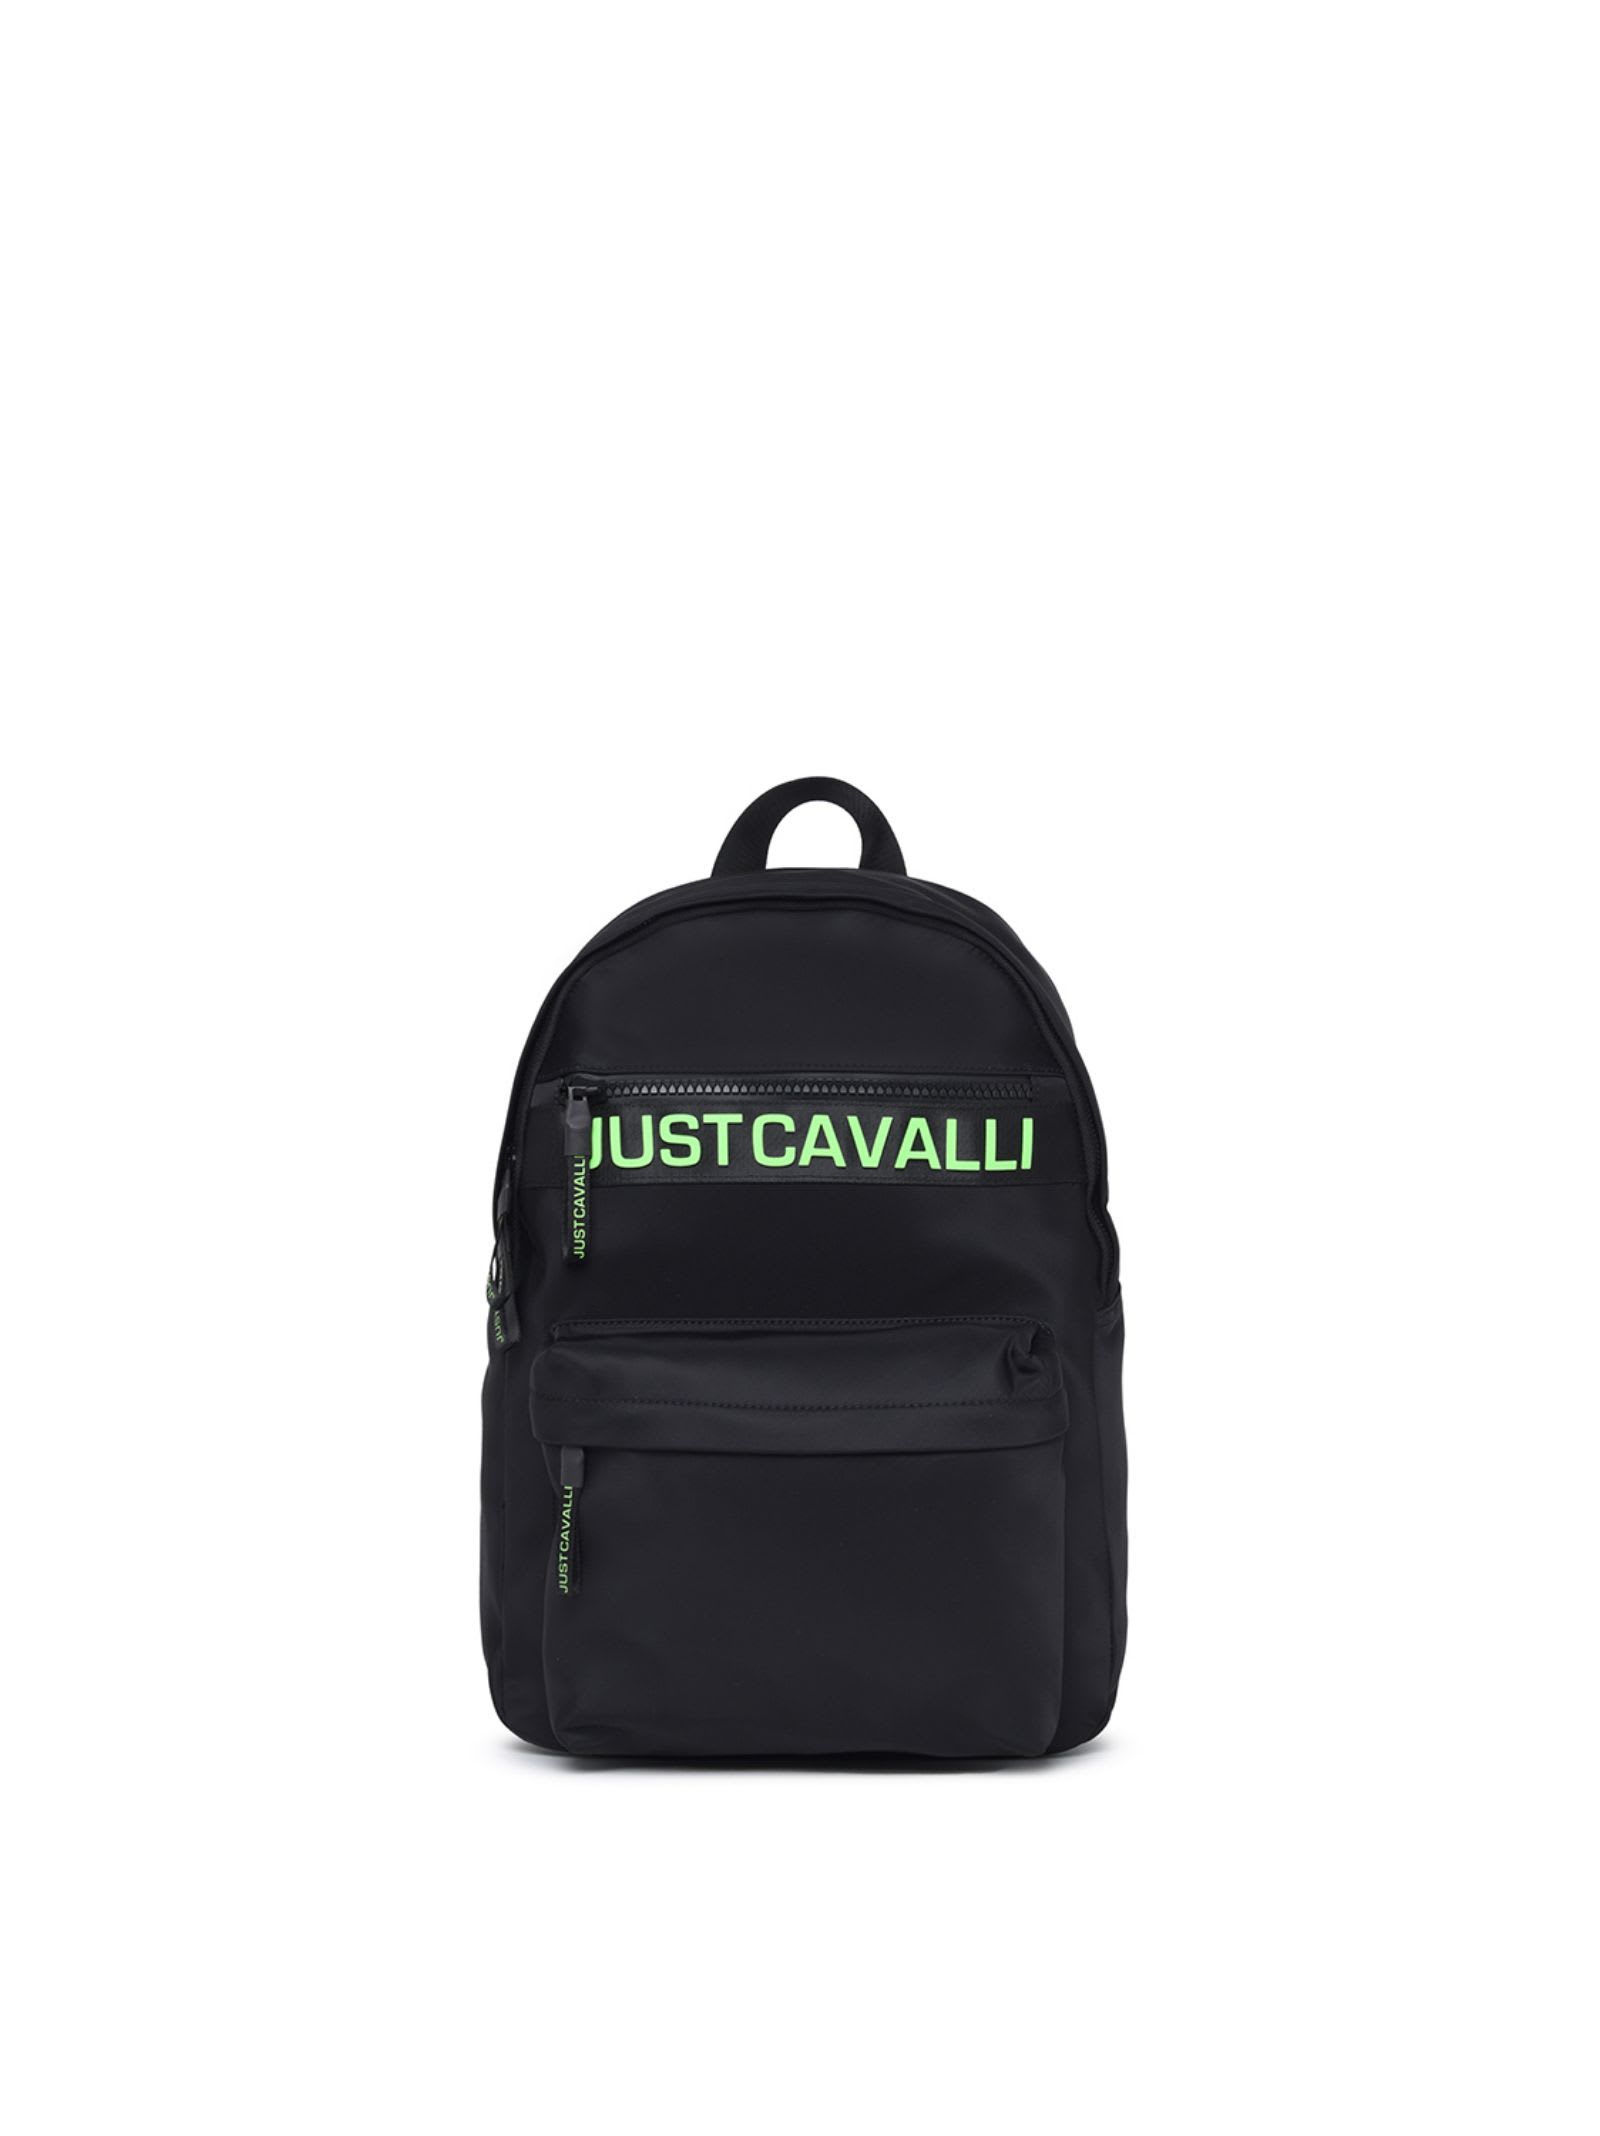 Roberto Cavalli Just Cavalli Backpack In Black/acid Lime